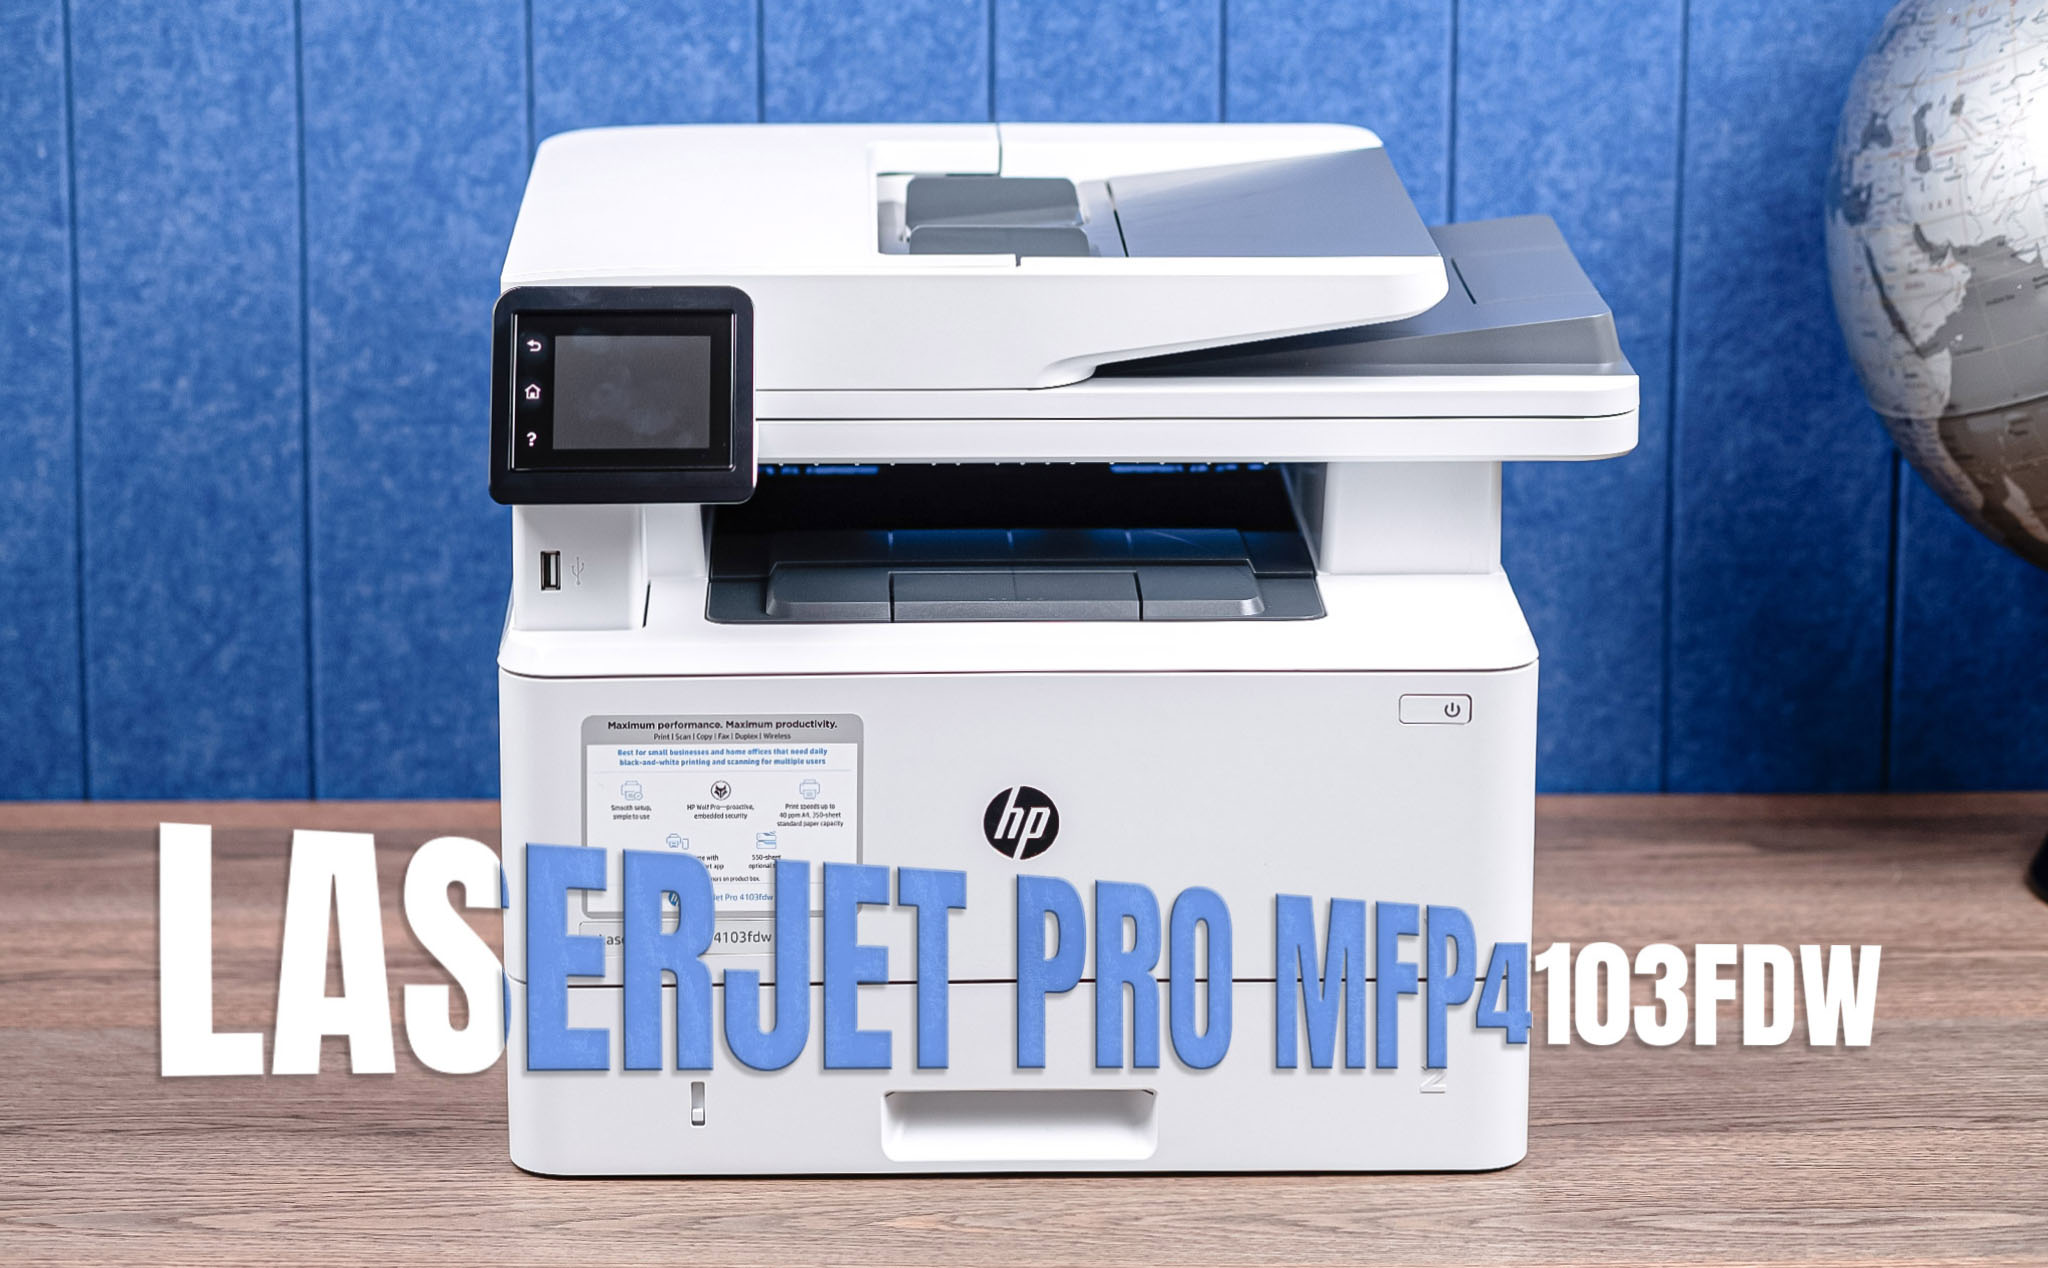 Trải nghiệm máy in HP LaserJet Pro MFP 4103fdw (2Z629A)